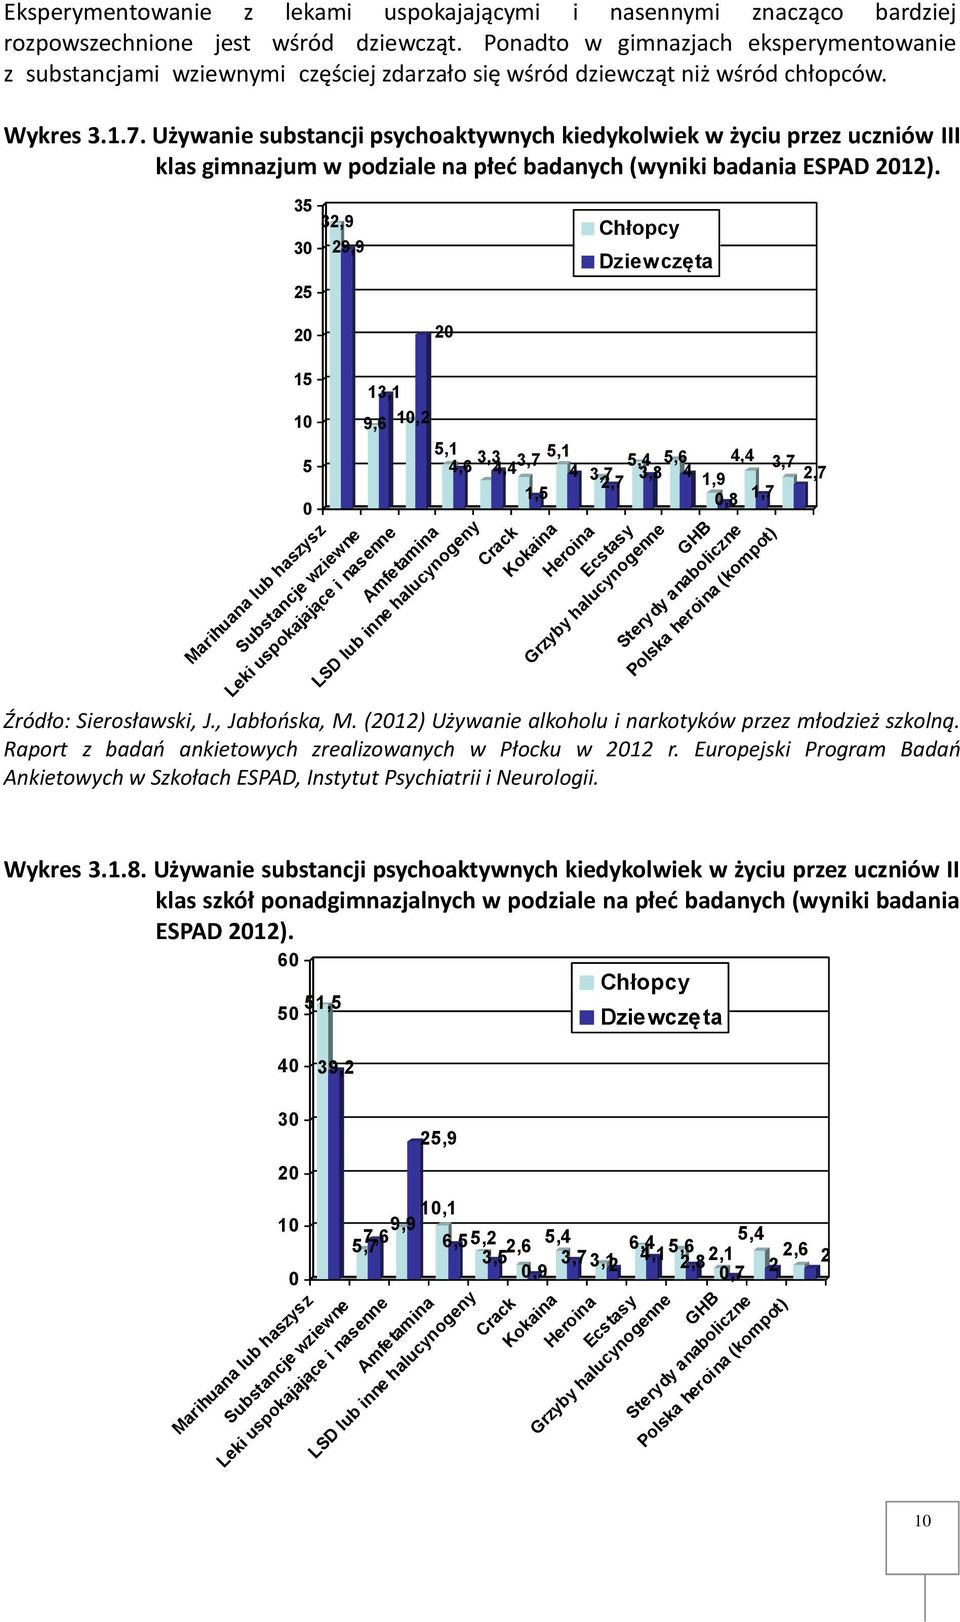 Używanie substancji psychoaktywnych kiedykolwiek w życiu przez uczniów III klas gimnazjum w podziale na płeć badanych (wyniki badania ESPAD 2012).